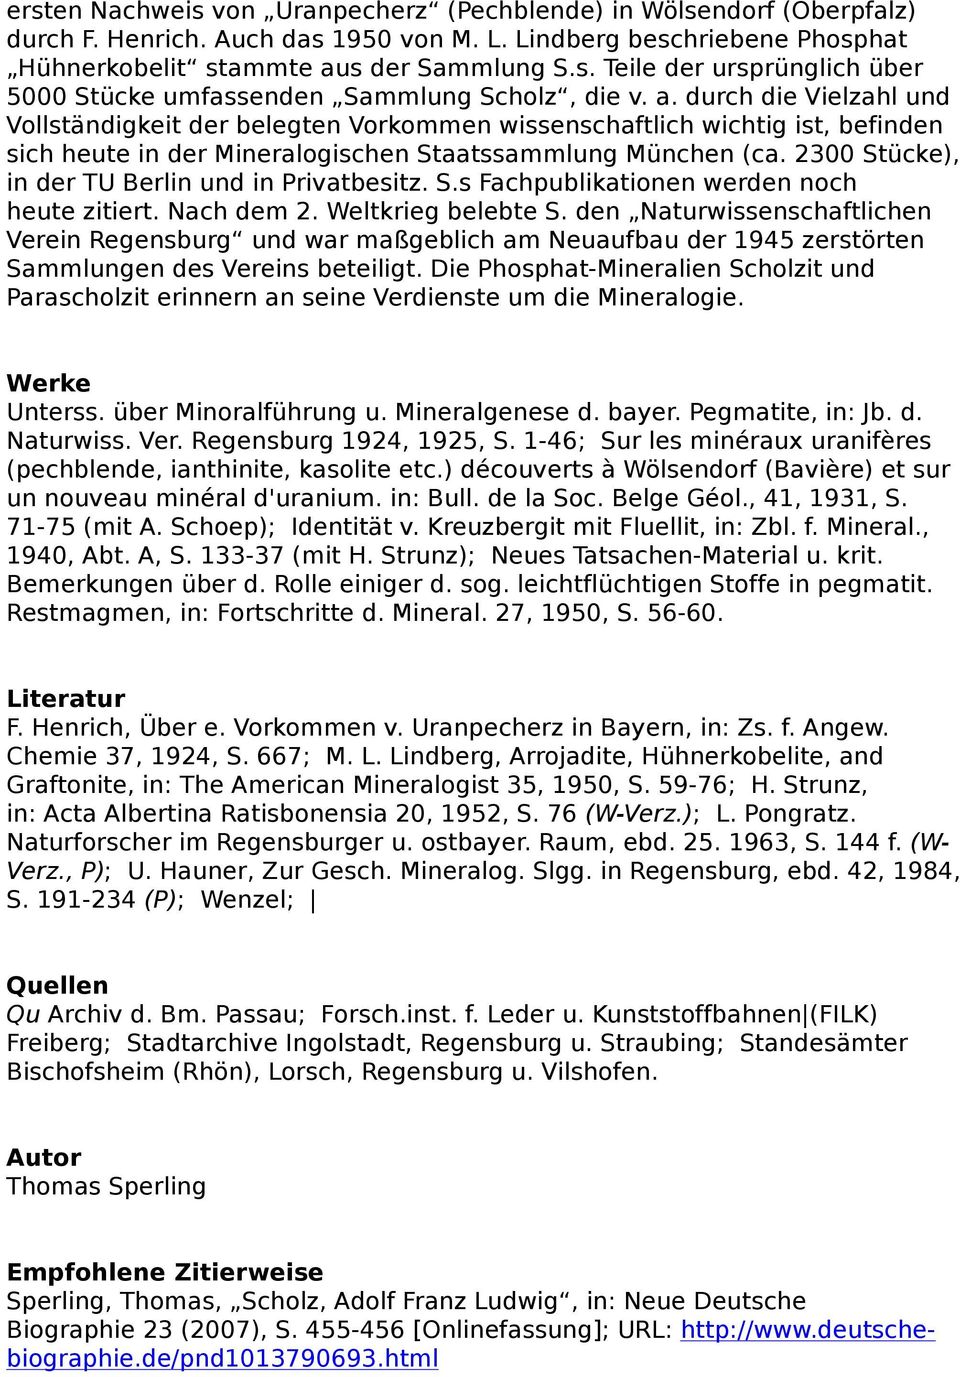 2300 Stücke), in der TU Berlin und in Privatbesitz. S.s Fachpublikationen werden noch heute zitiert. Nach dem 2. Weltkrieg belebte S.